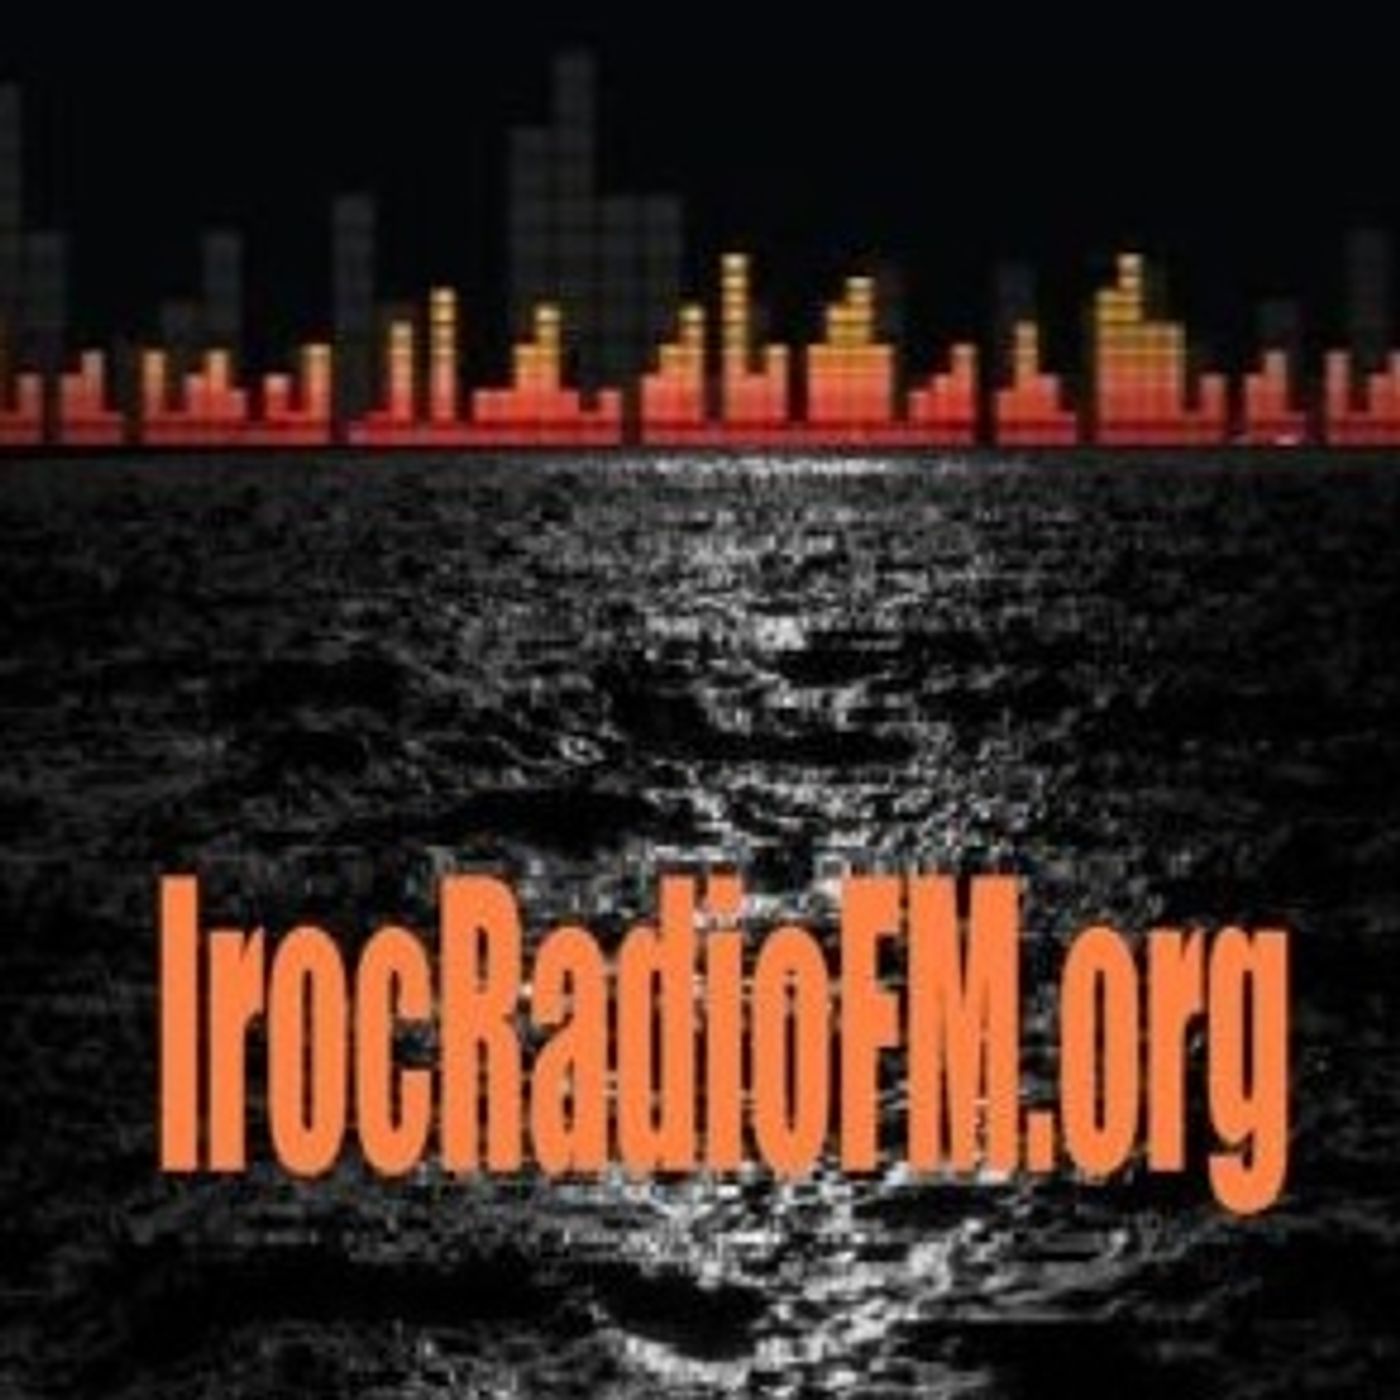 IrocRadioFM